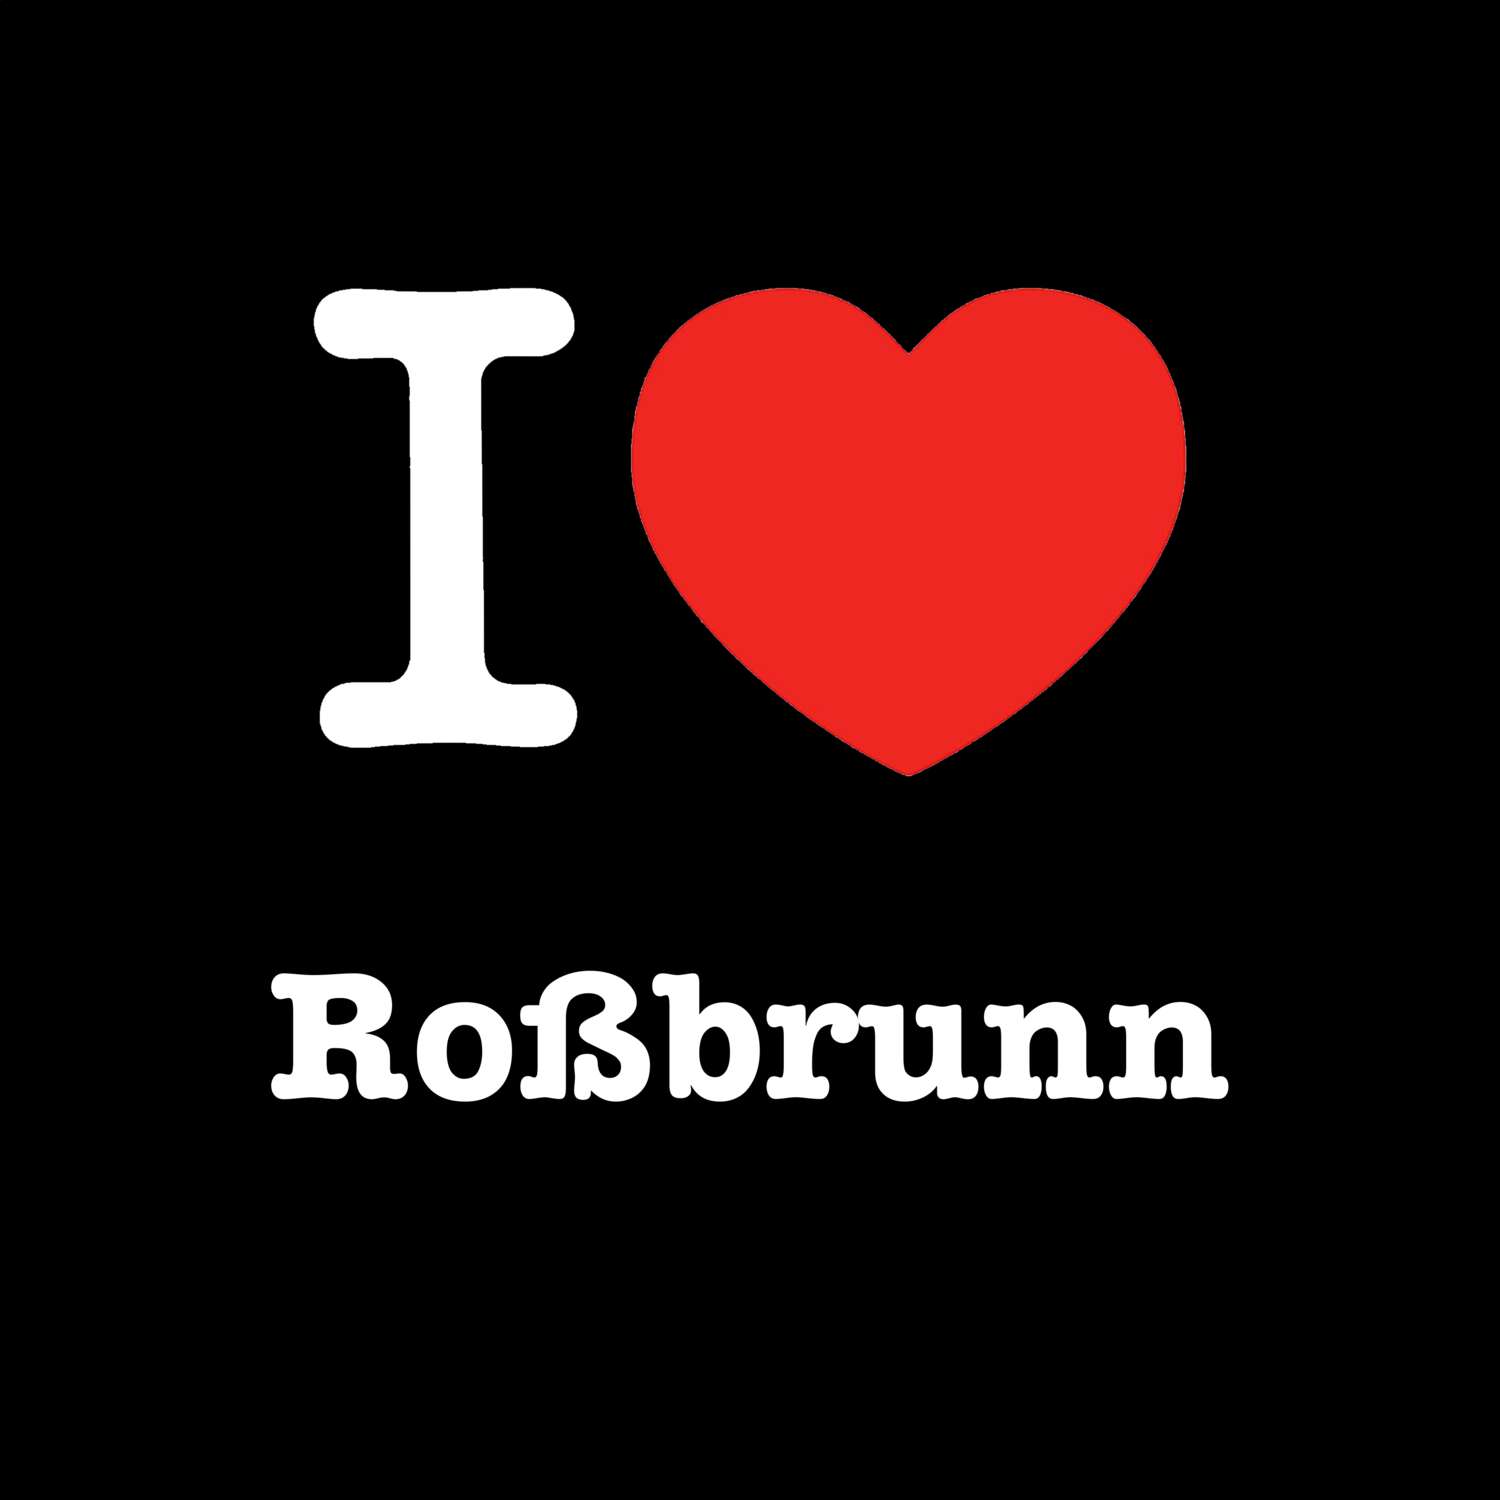 Roßbrunn T-Shirt »I love«